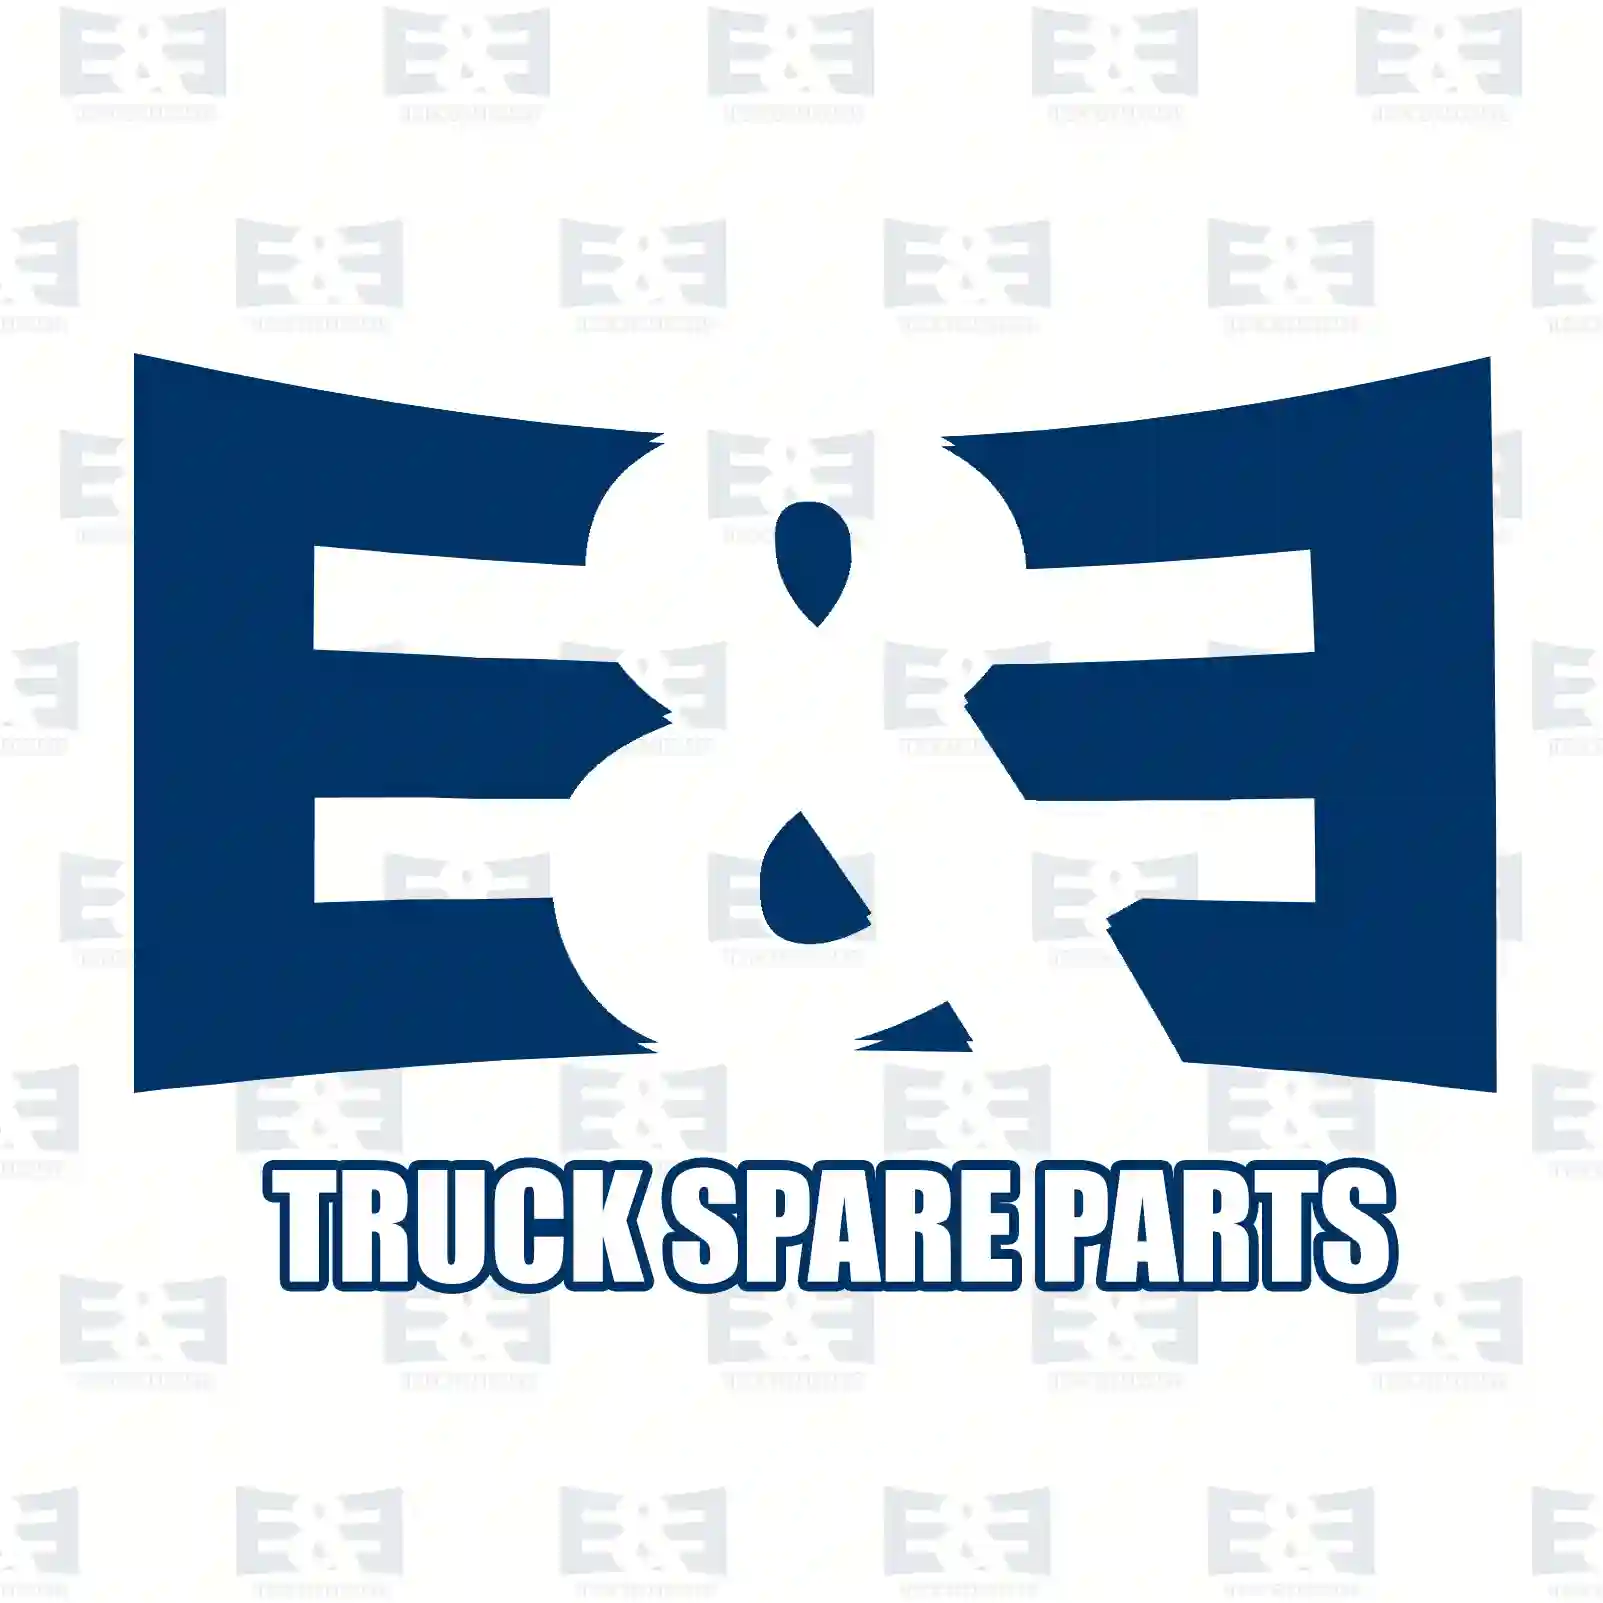 V-belt kit, 2E2203867, 216736, 607600, 1556515, 6031973, 06580432243, 06580472243, 06580722432, 06580732432, 1447696M91, 2614B173, 3616512M91, 3617176M91, 4766775102, 967206 ||  2E2203867 E&E Truck Spare Parts | Truck Spare Parts, Auotomotive Spare Parts V-belt kit, 2E2203867, 216736, 607600, 1556515, 6031973, 06580432243, 06580472243, 06580722432, 06580732432, 1447696M91, 2614B173, 3616512M91, 3617176M91, 4766775102, 967206 ||  2E2203867 E&E Truck Spare Parts | Truck Spare Parts, Auotomotive Spare Parts